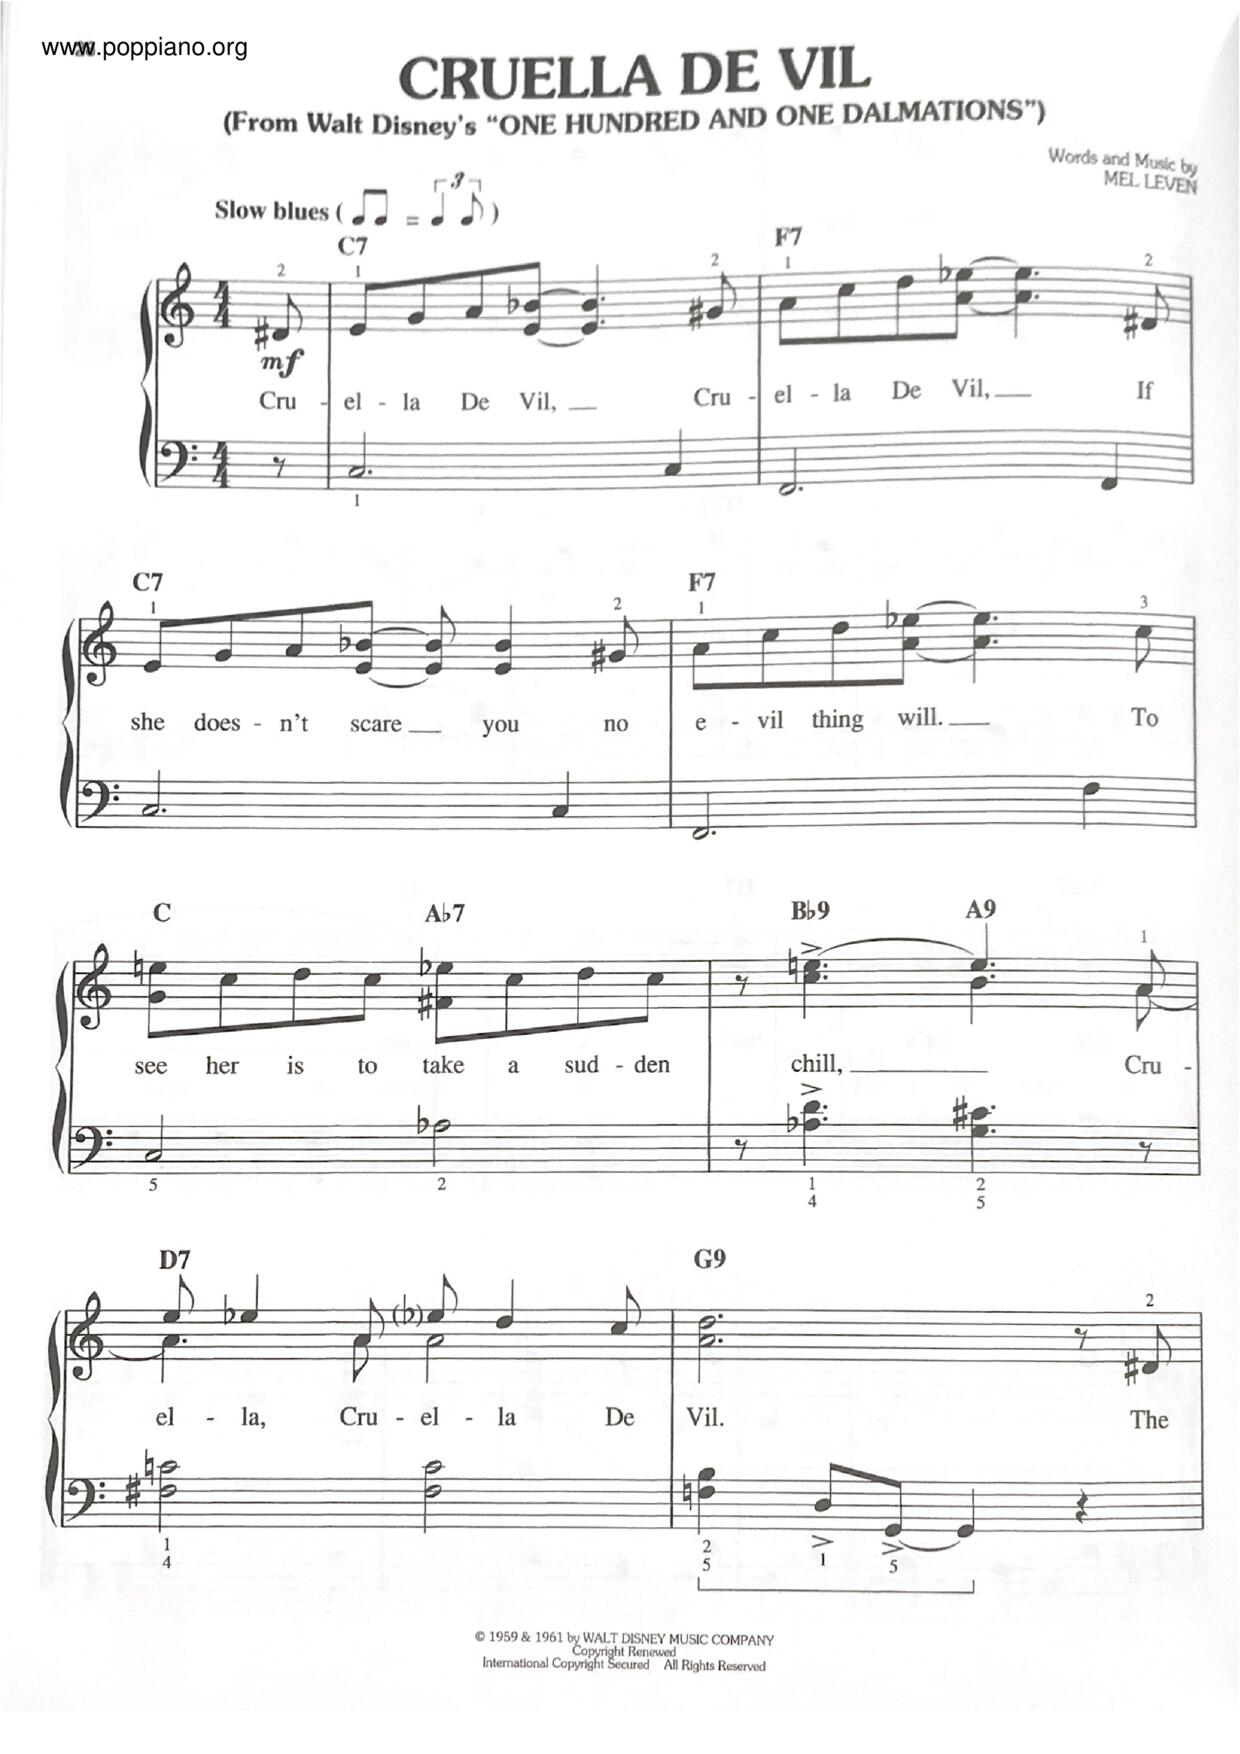 101 Dalmatians - Cruella De Vil Score